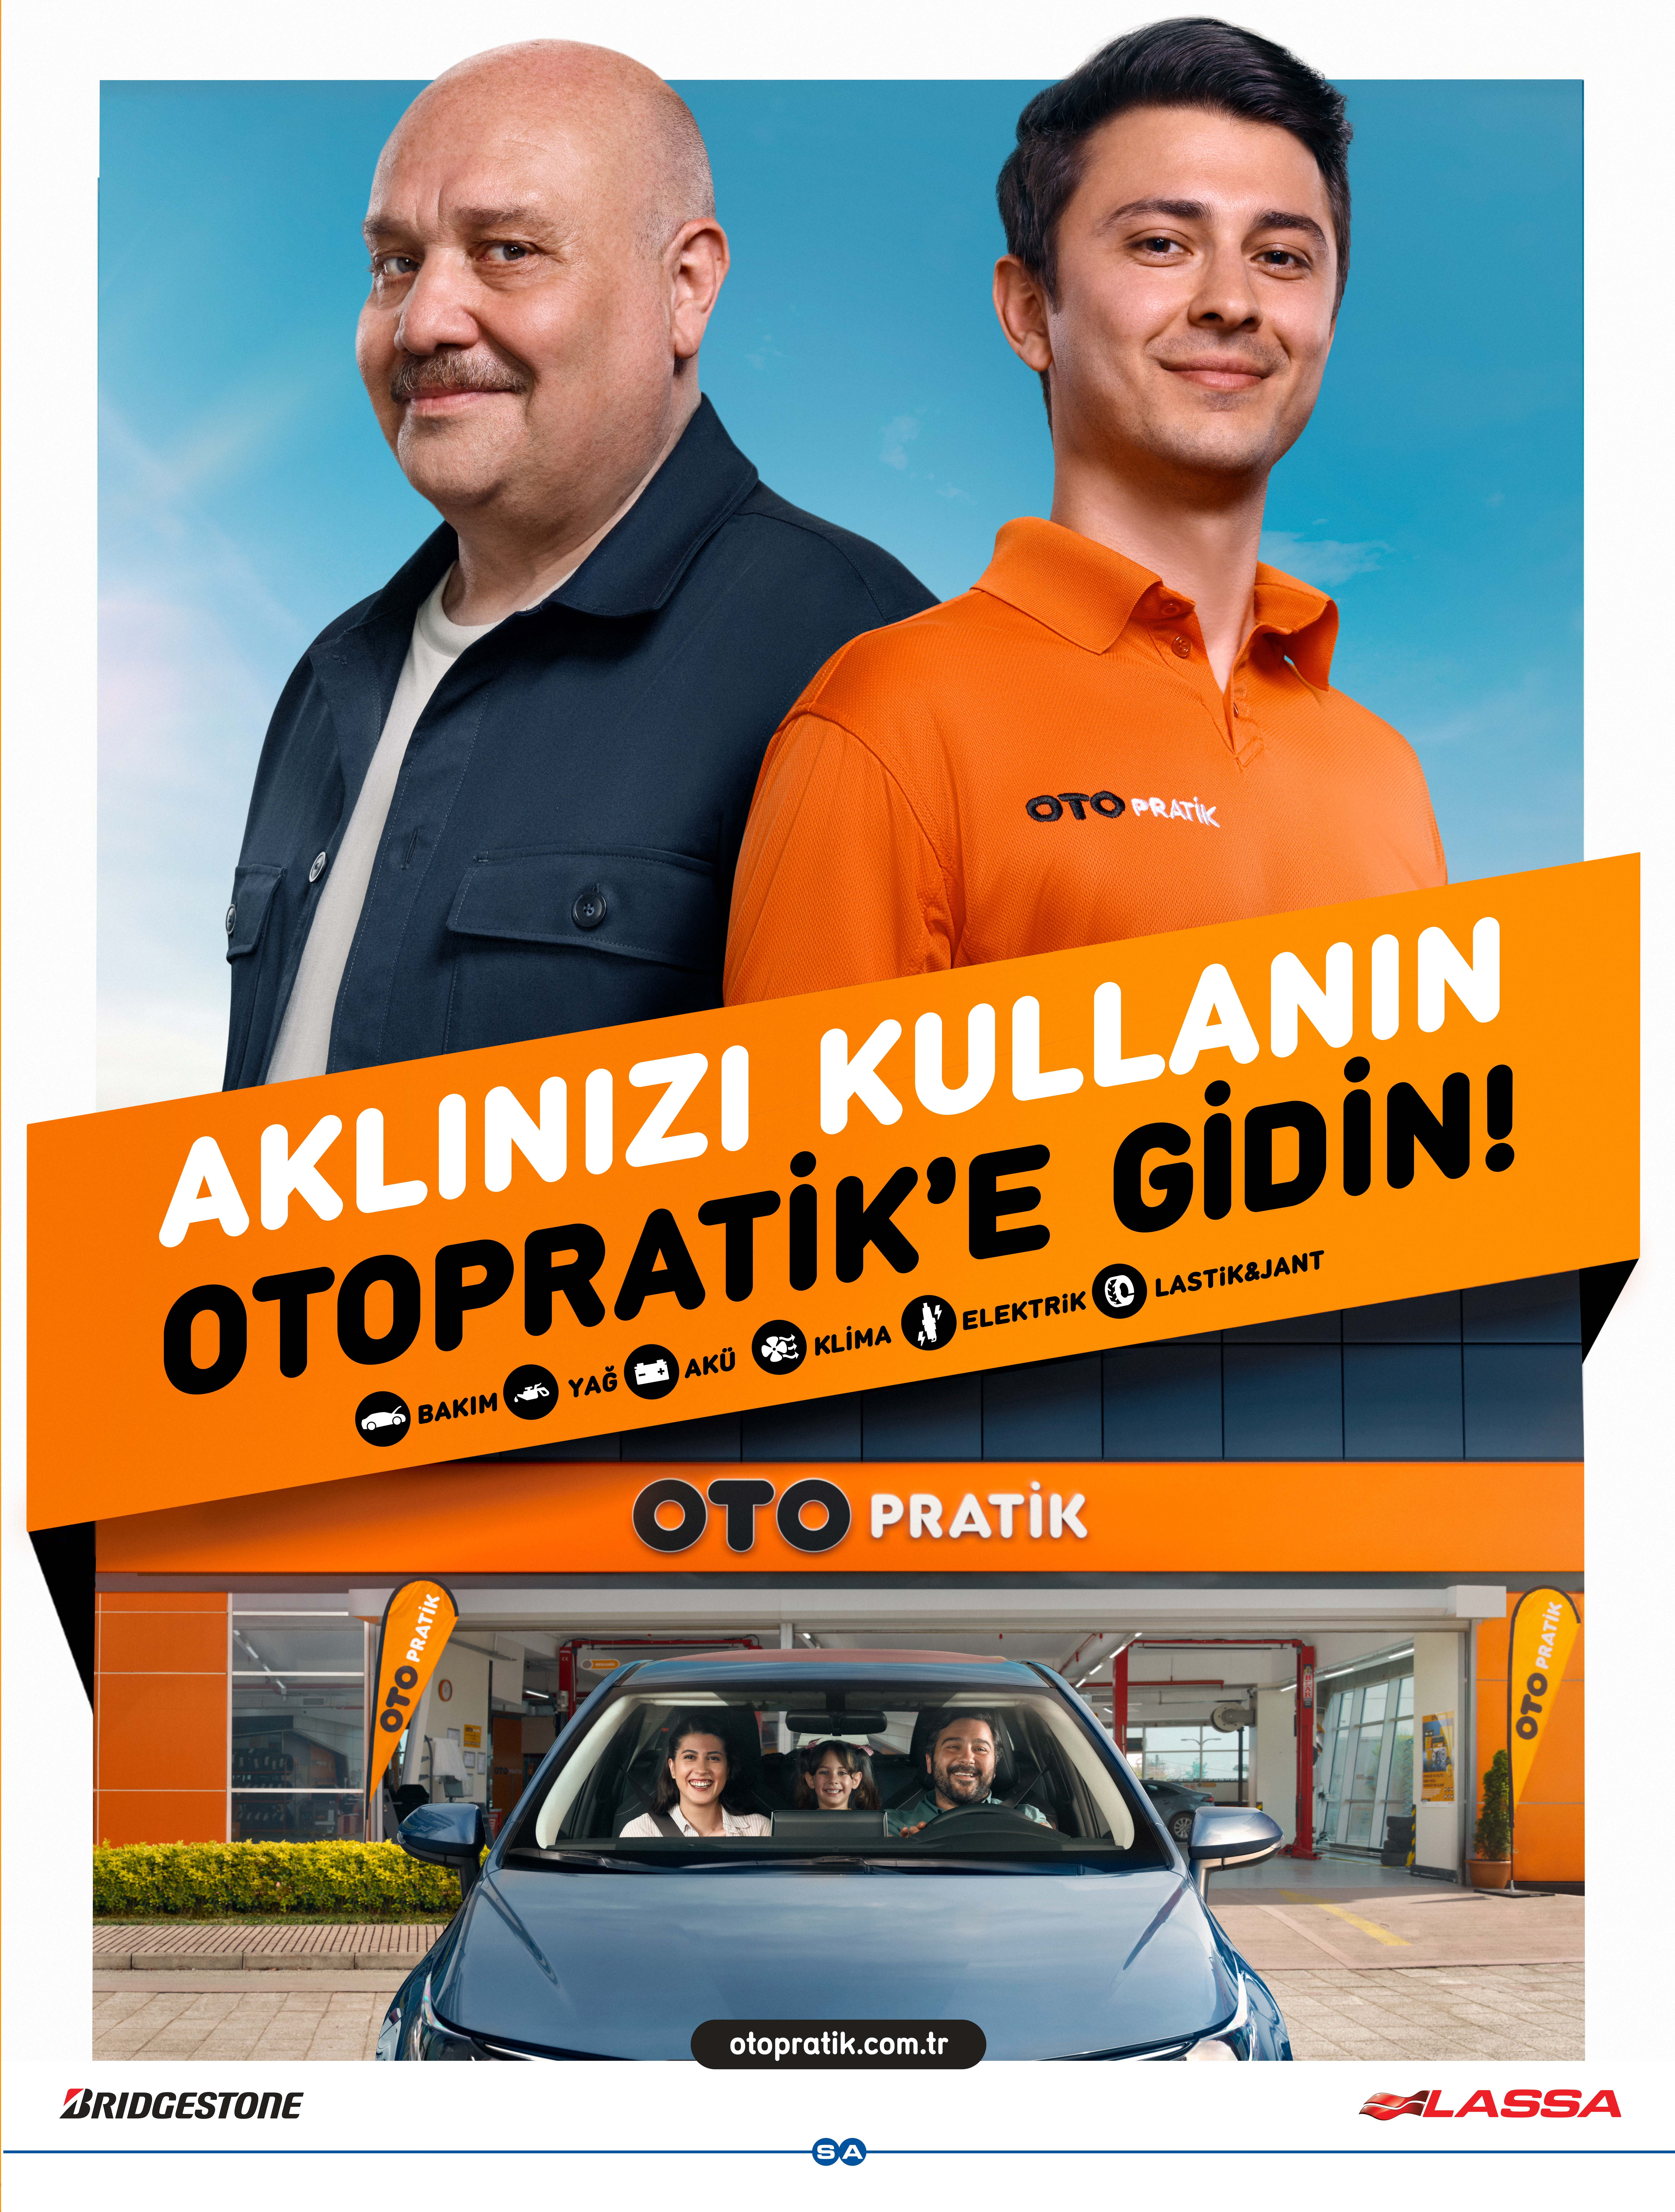 Türkiye’nin en çok tercih edilen araç markası Otopratik